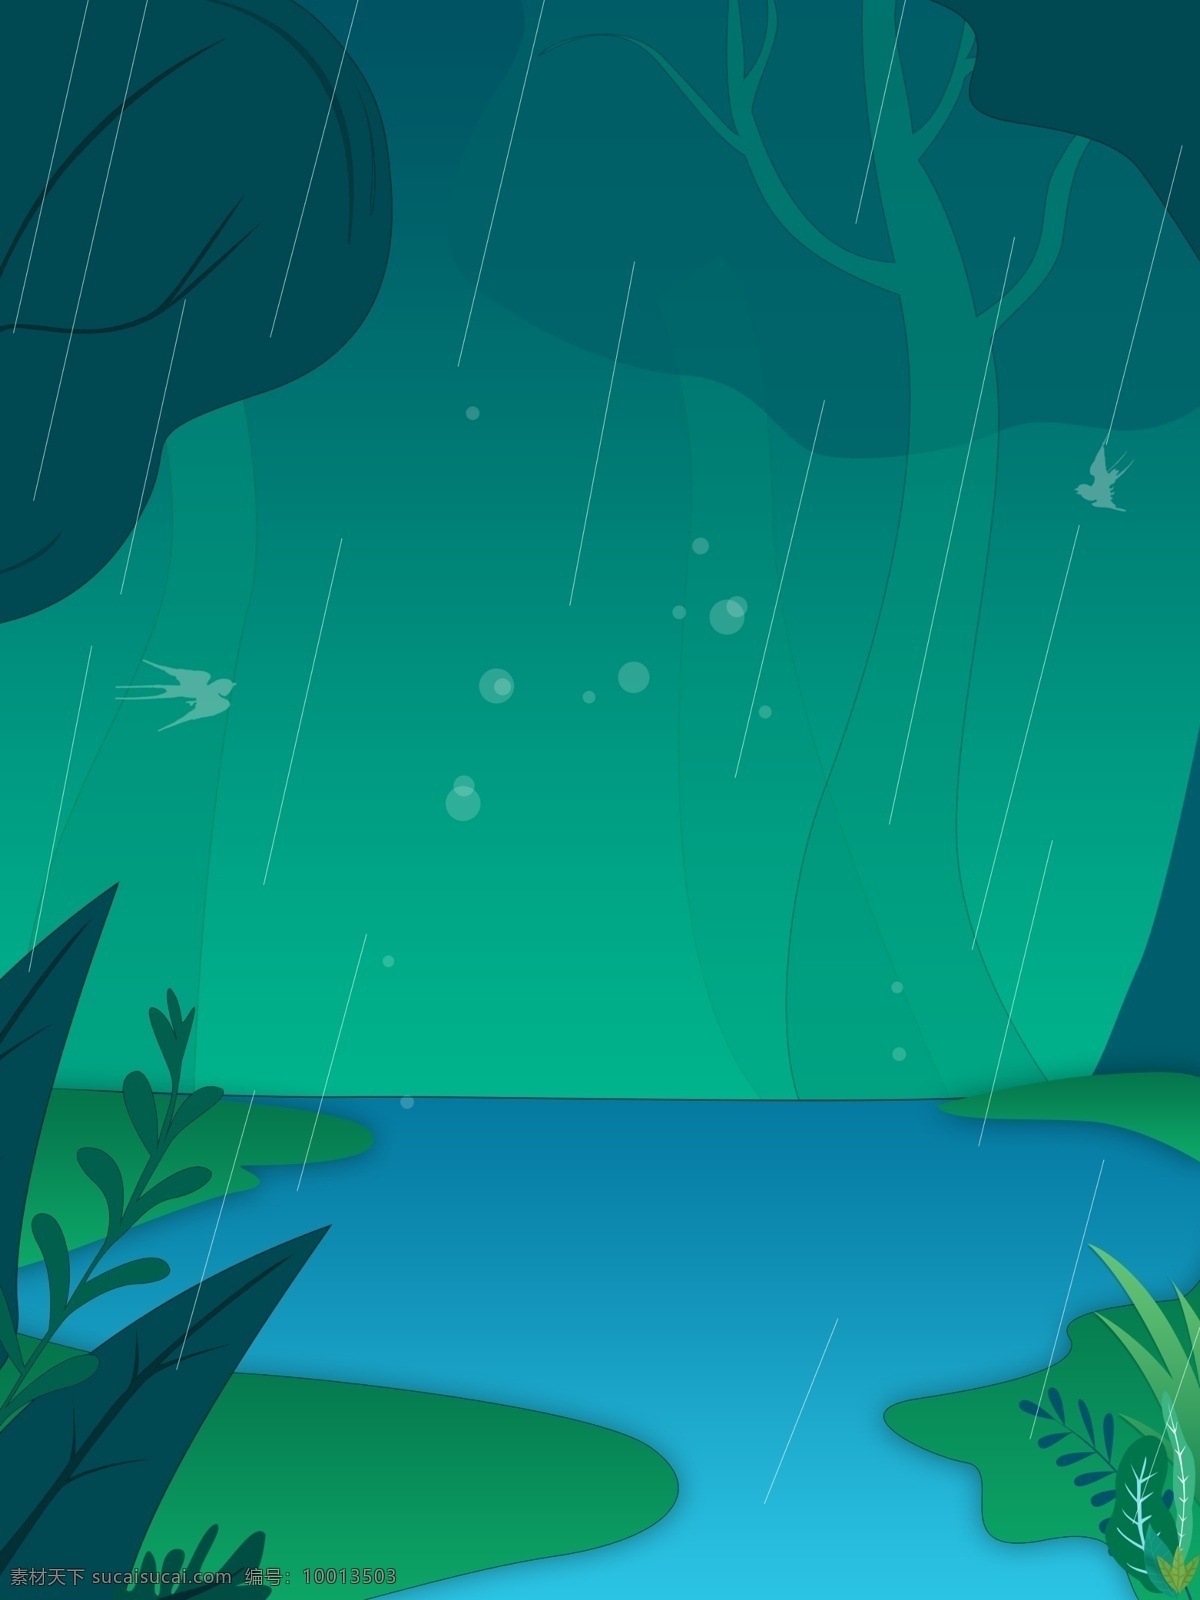 蓝色 清新 风 河边 风景 插画 背景 植物背景 唯美 草地背景 绿地背景 蓝天白云 叶子 山水风景 雨季 下雨